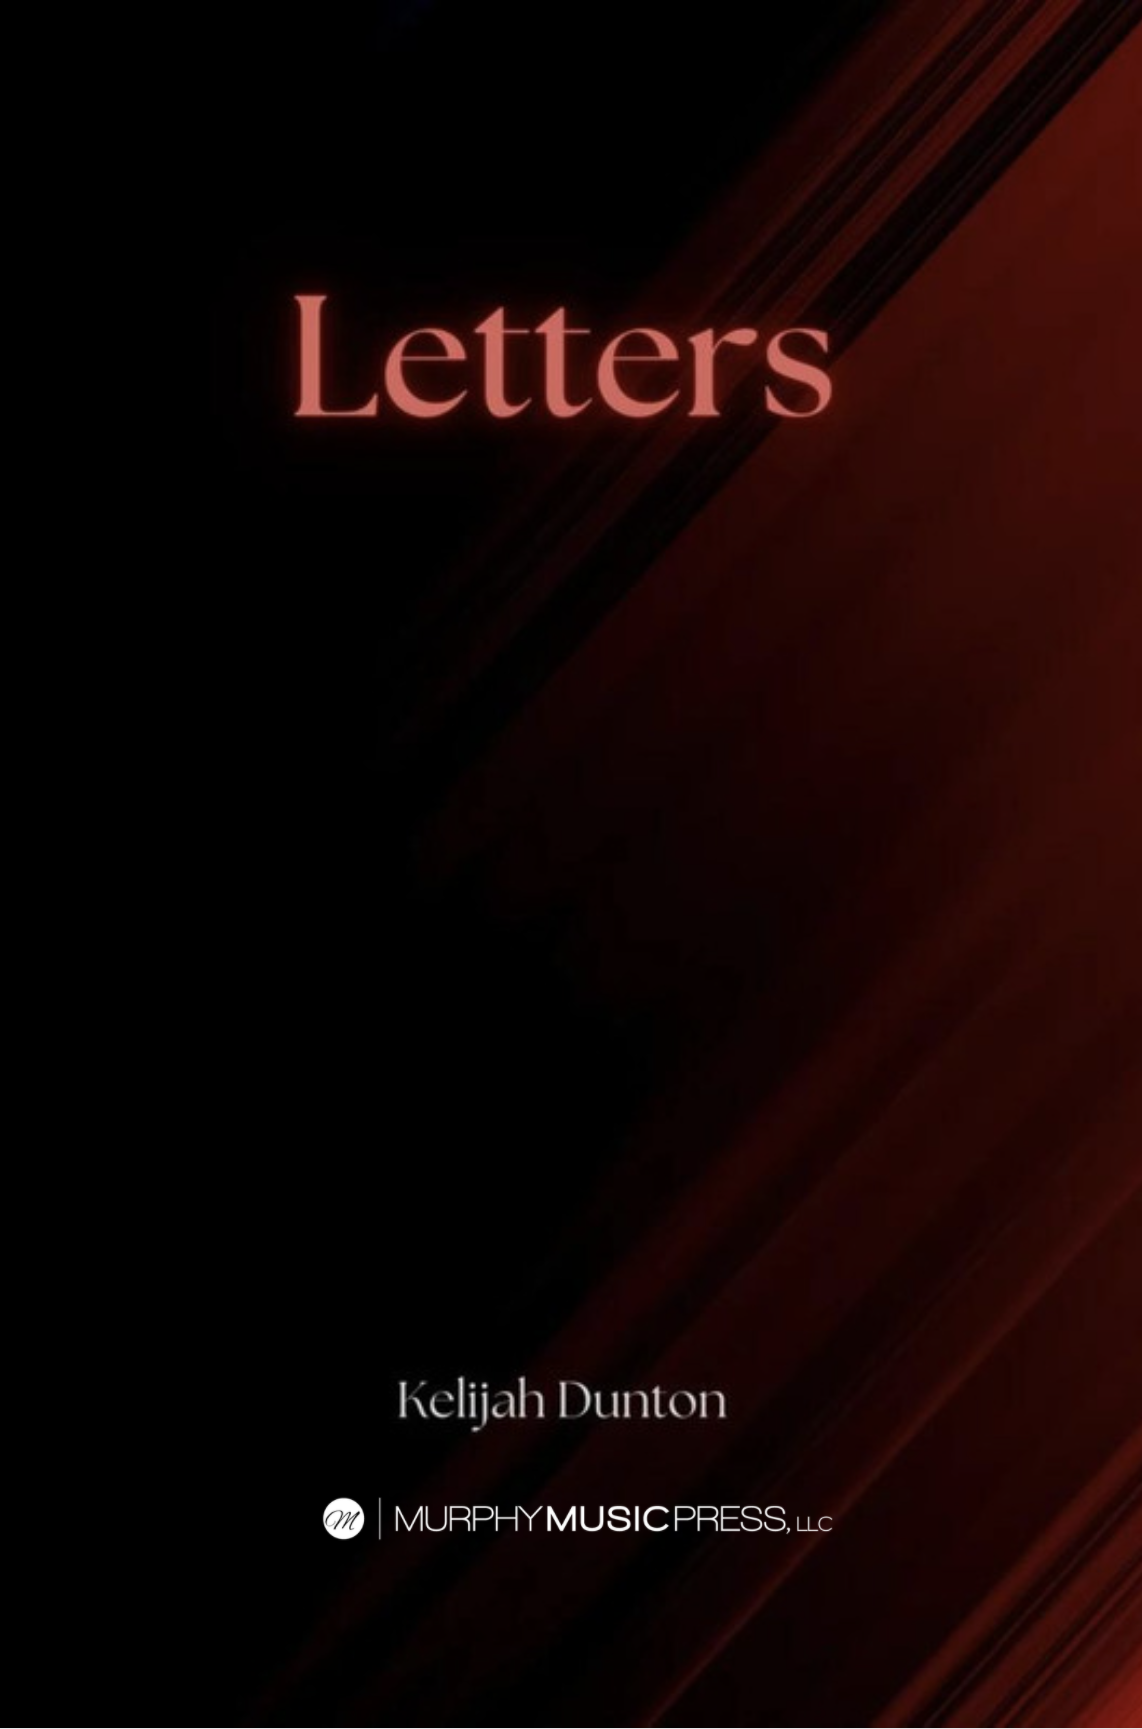 Letters (Score Only) by Kelijah Dunton